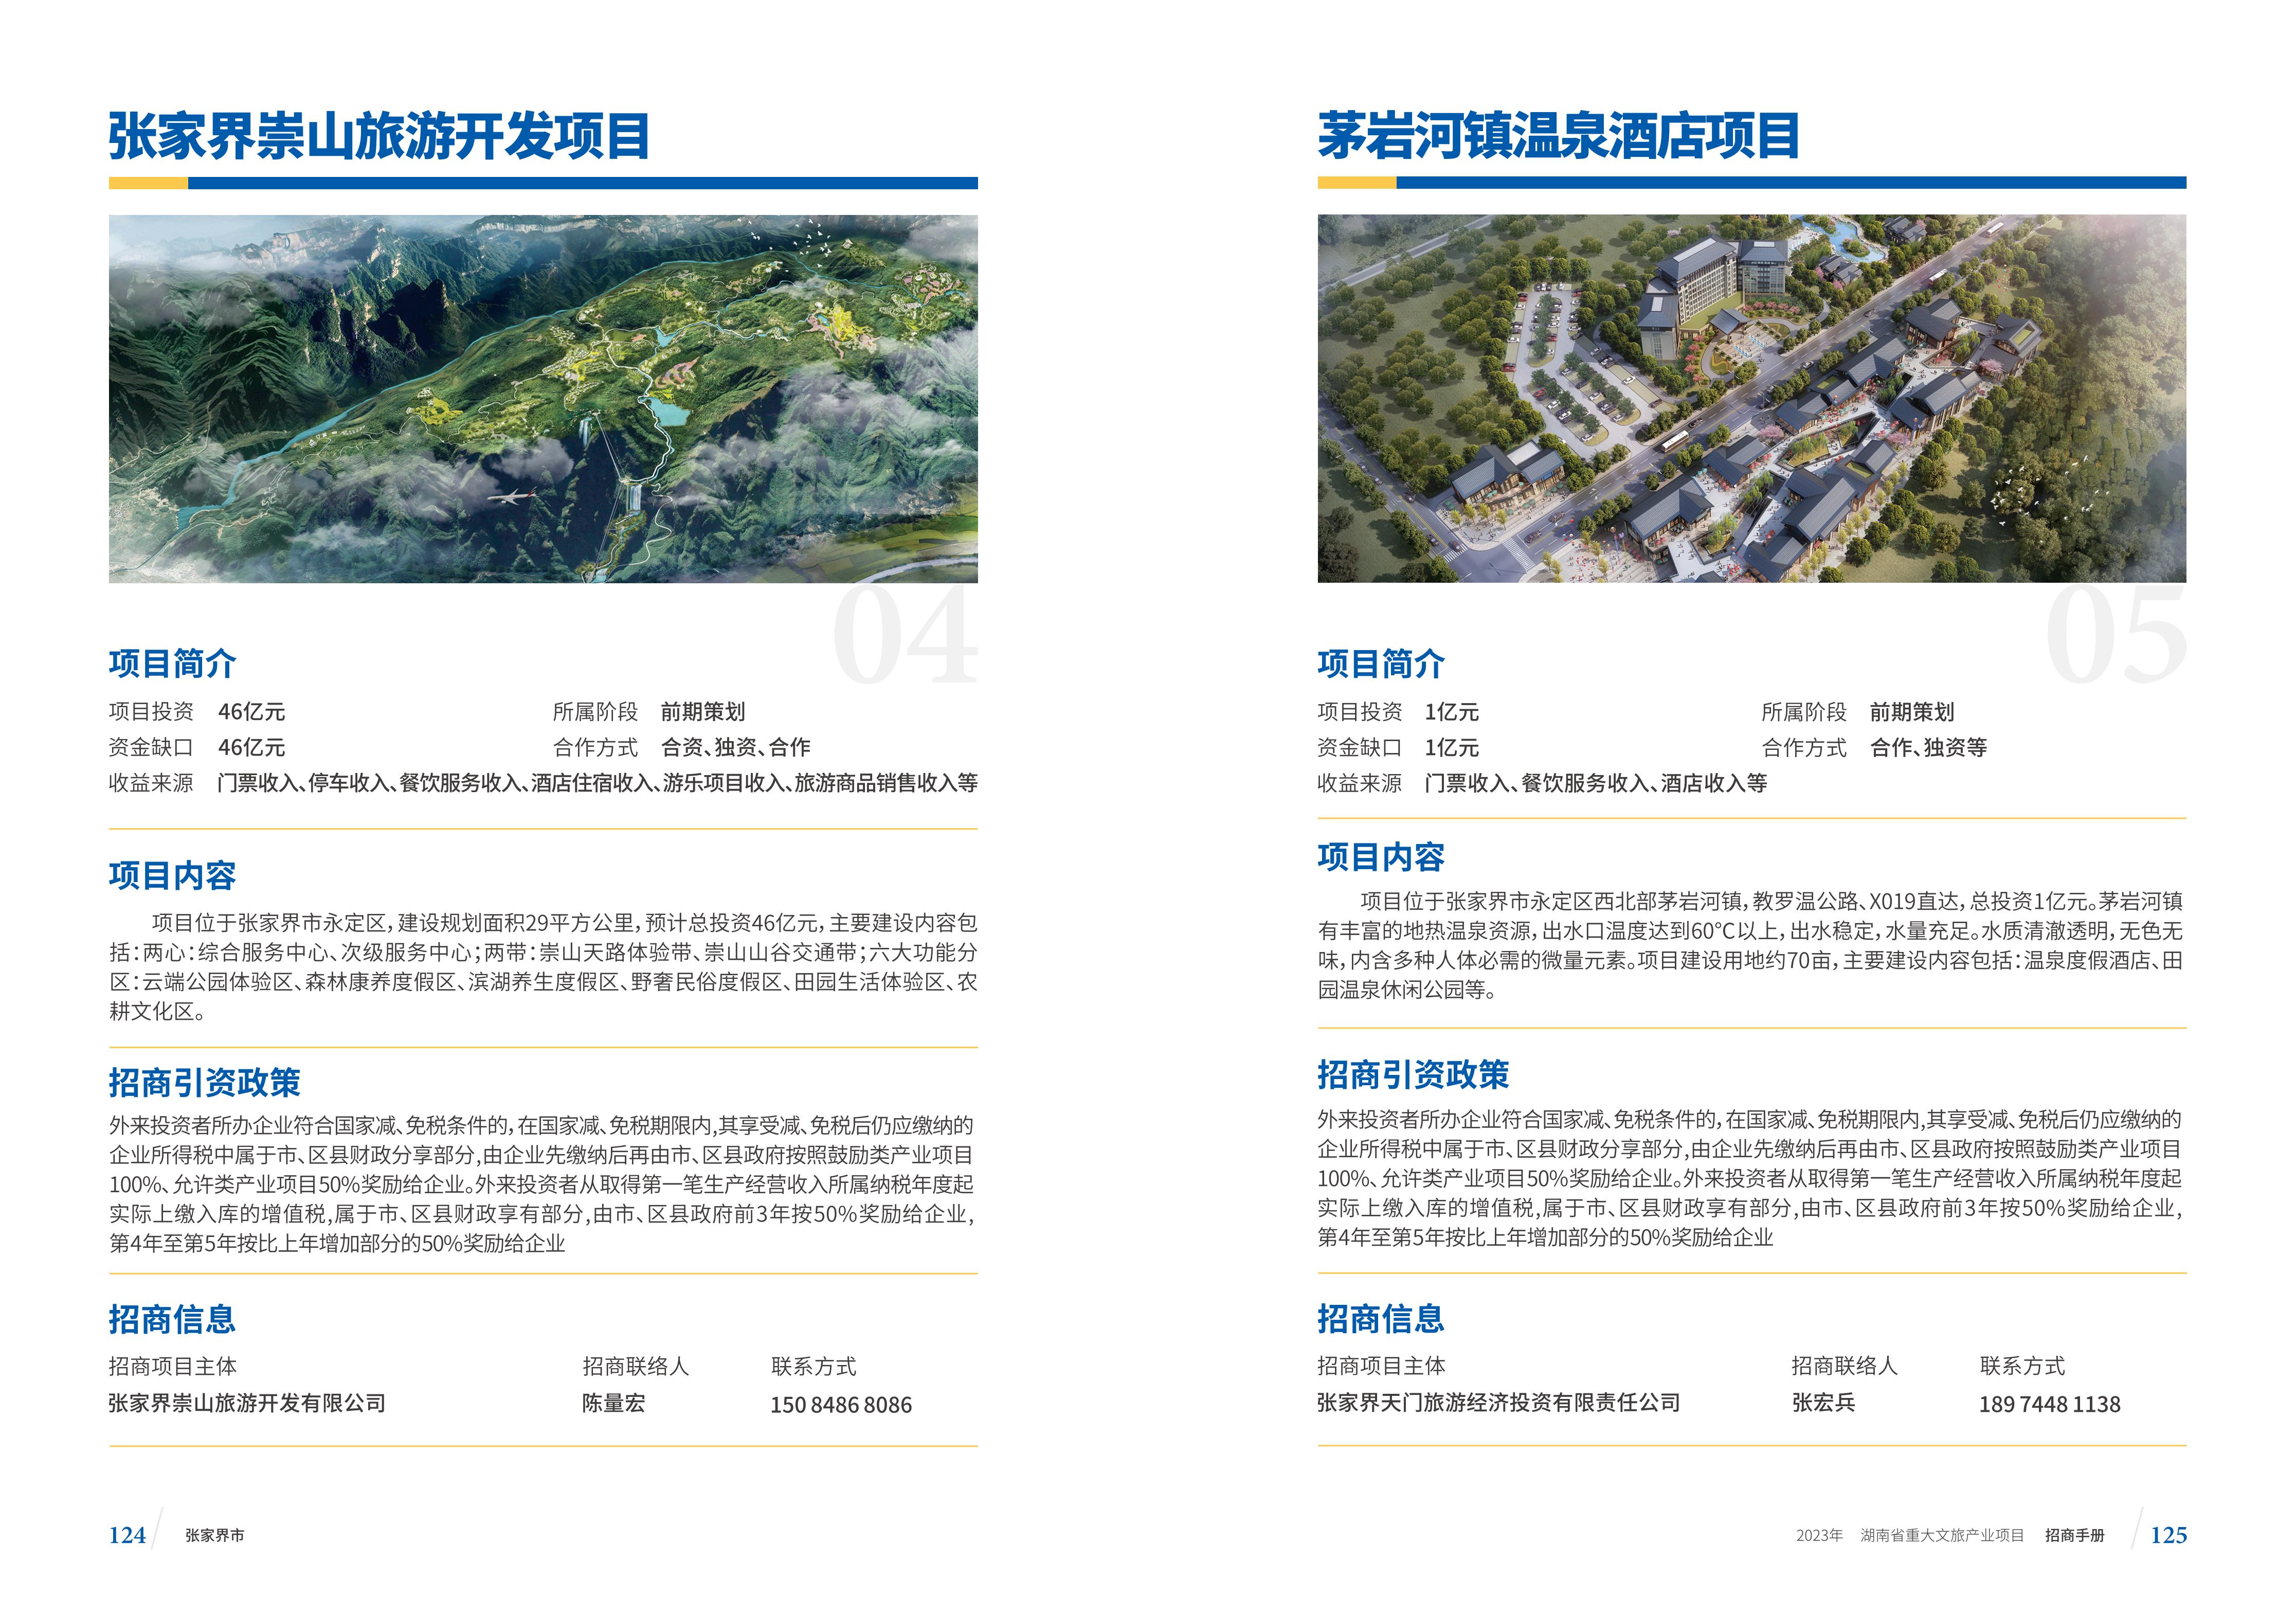 湖南省重大文旅产业项目招手册线上链接版_70.jpg